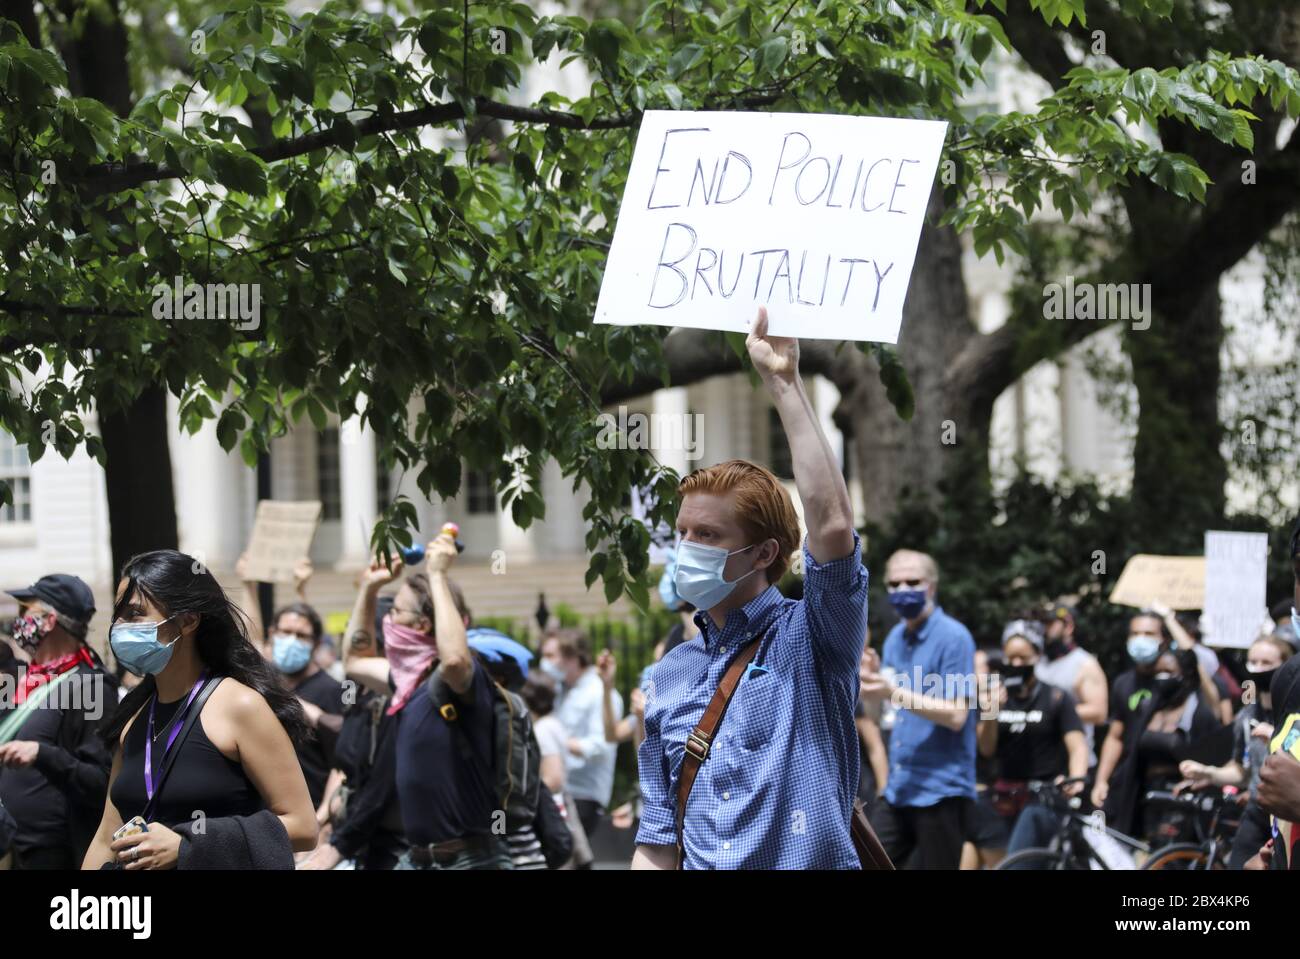 (200605) -- BEIJING, 5 juin 2020 (Xinhua) -- des manifestants protestent contre la mort de George Floyd à New York, aux États-Unis, le 2 juin 2020. POUR ALLER AVEC LES TITRES DE XINHUA DU 5 JUIN 2020 (Xinhua/Wang Ying) Banque D'Images